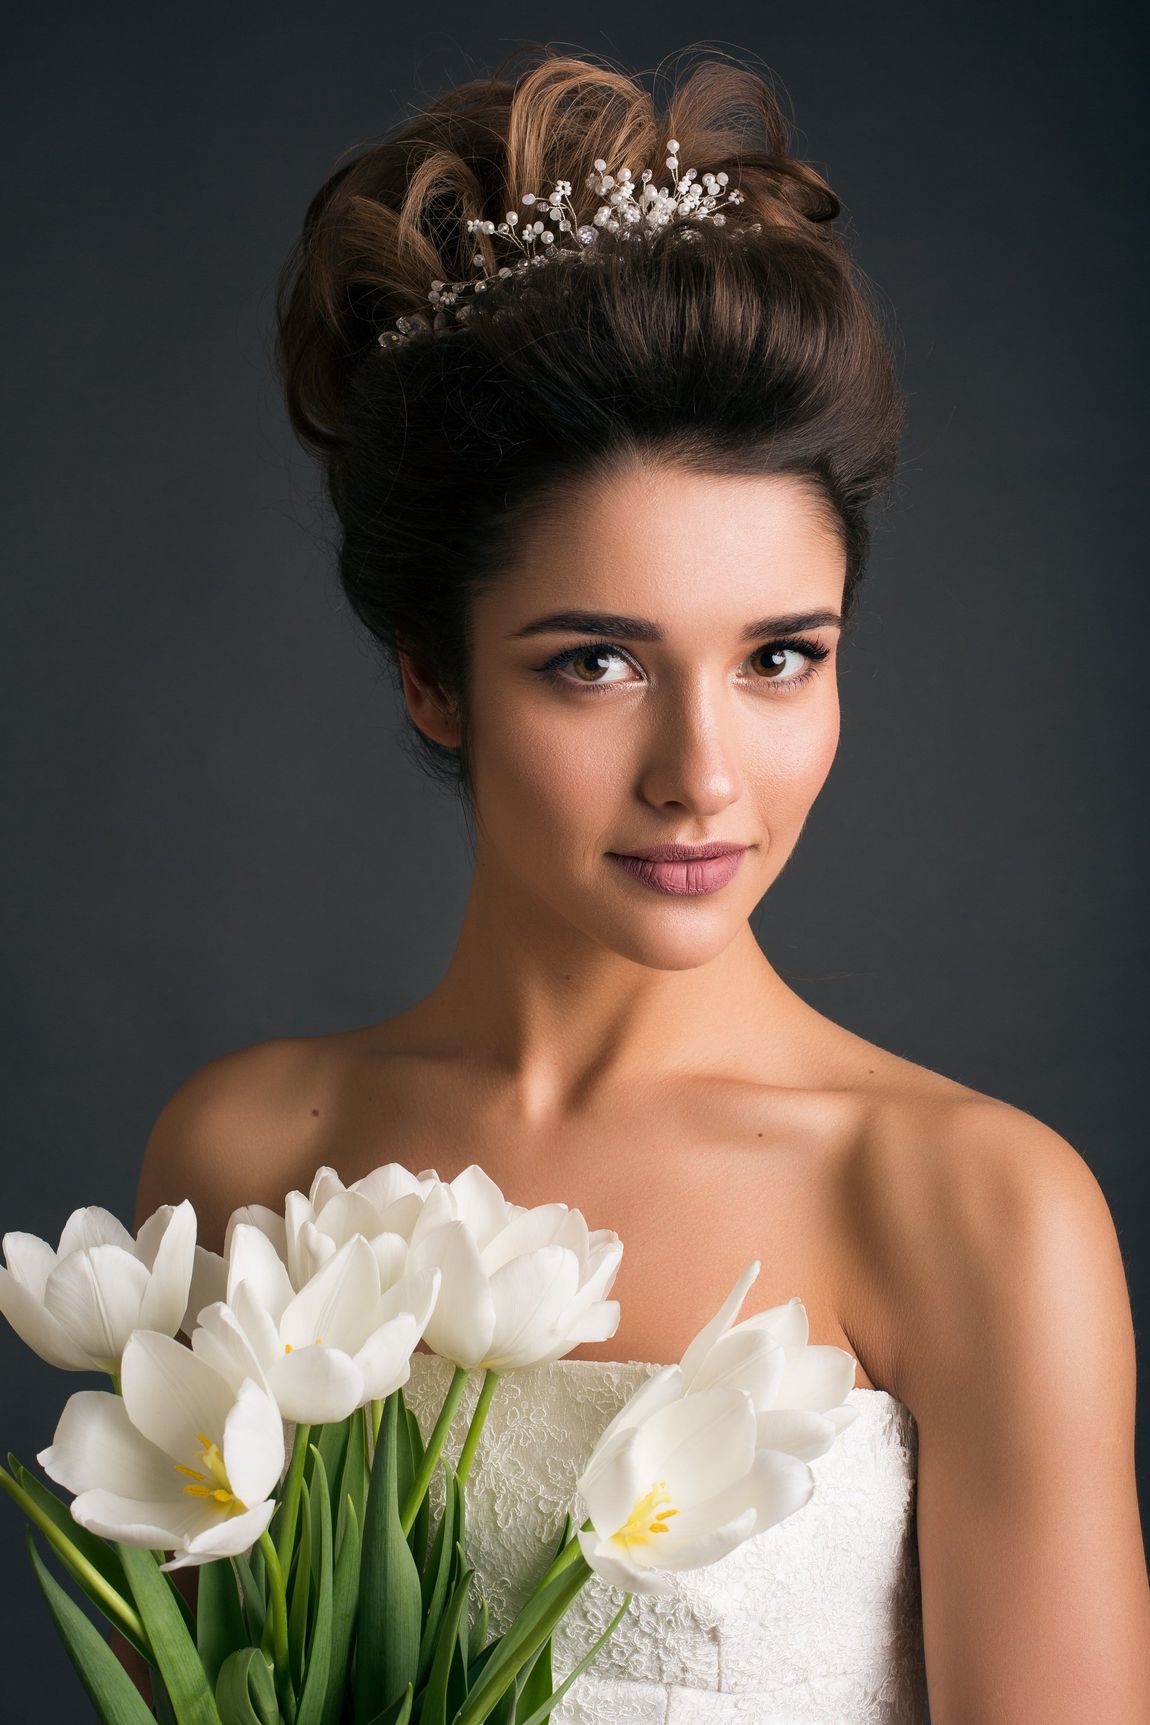 Woman wearing tiara holding tulips